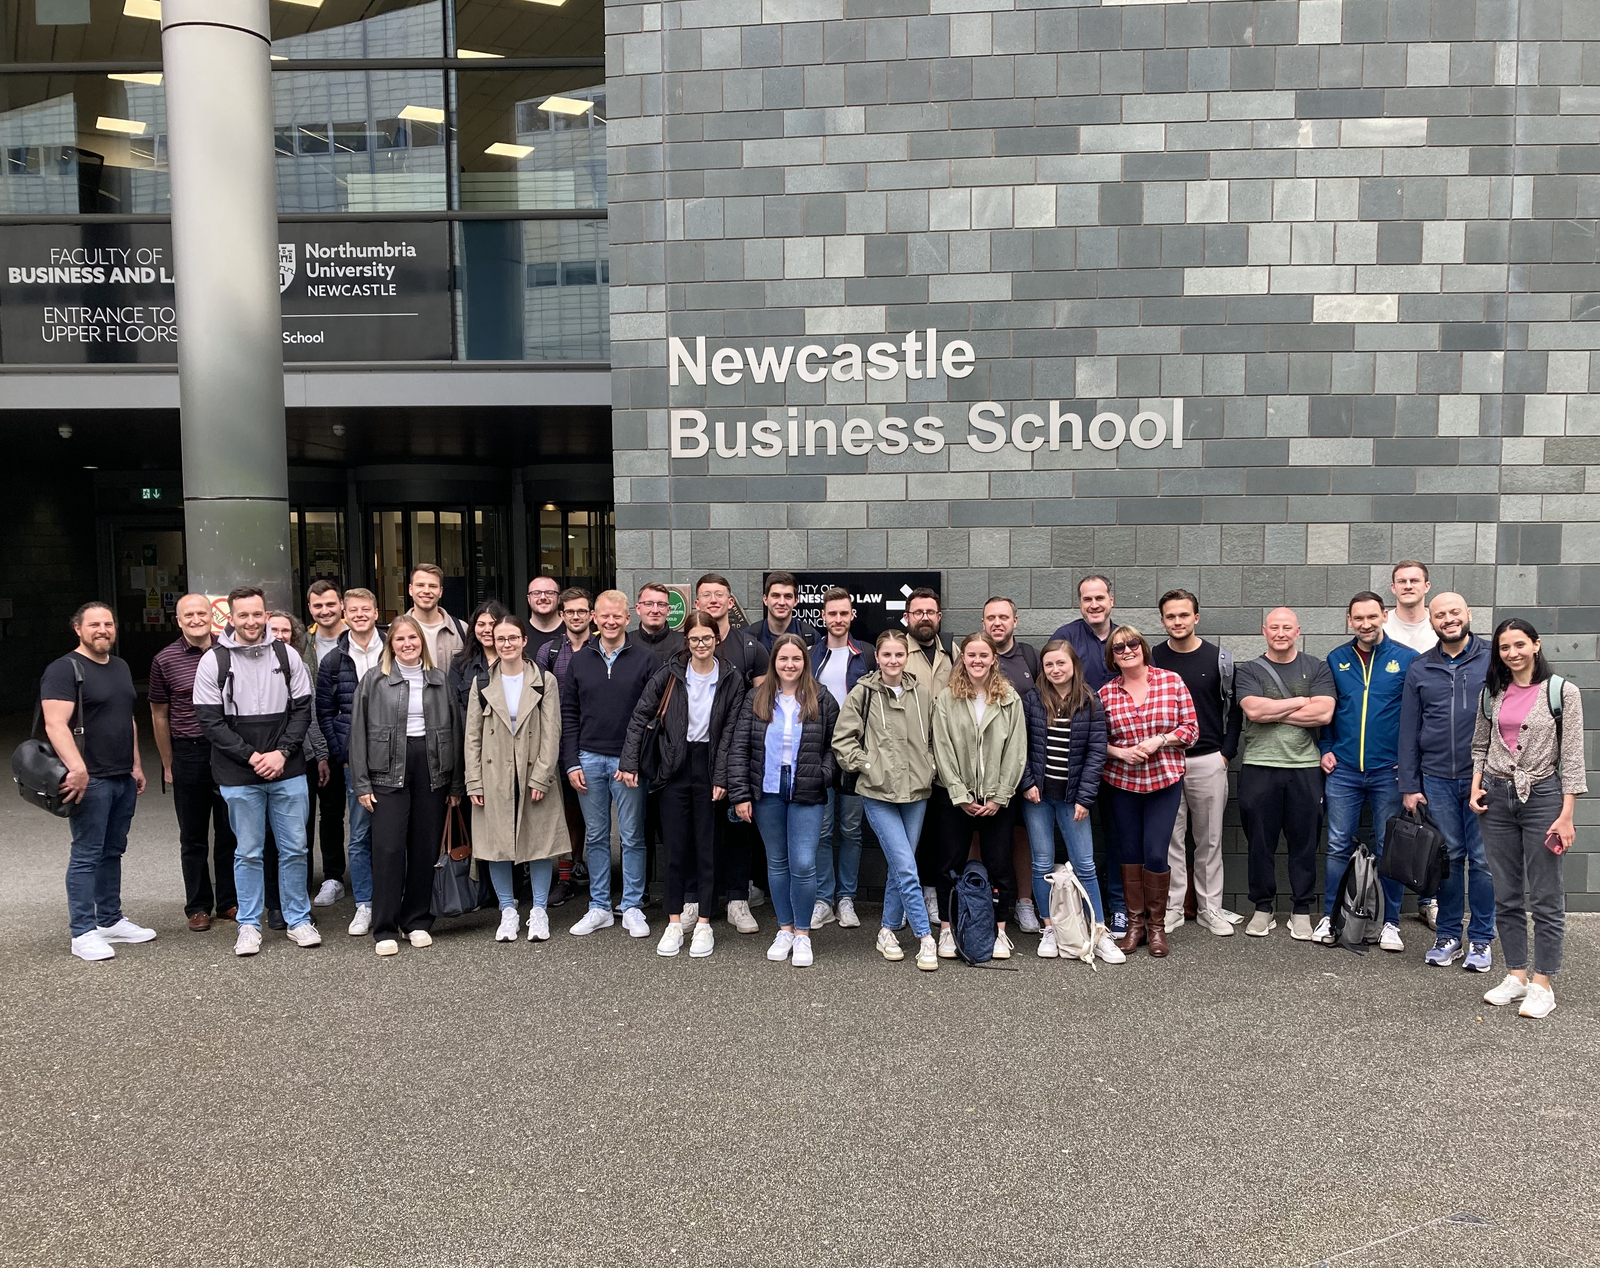 Gruppenfoto der Teilnehmenden vor dem Gebäude der Northumbria University Business School